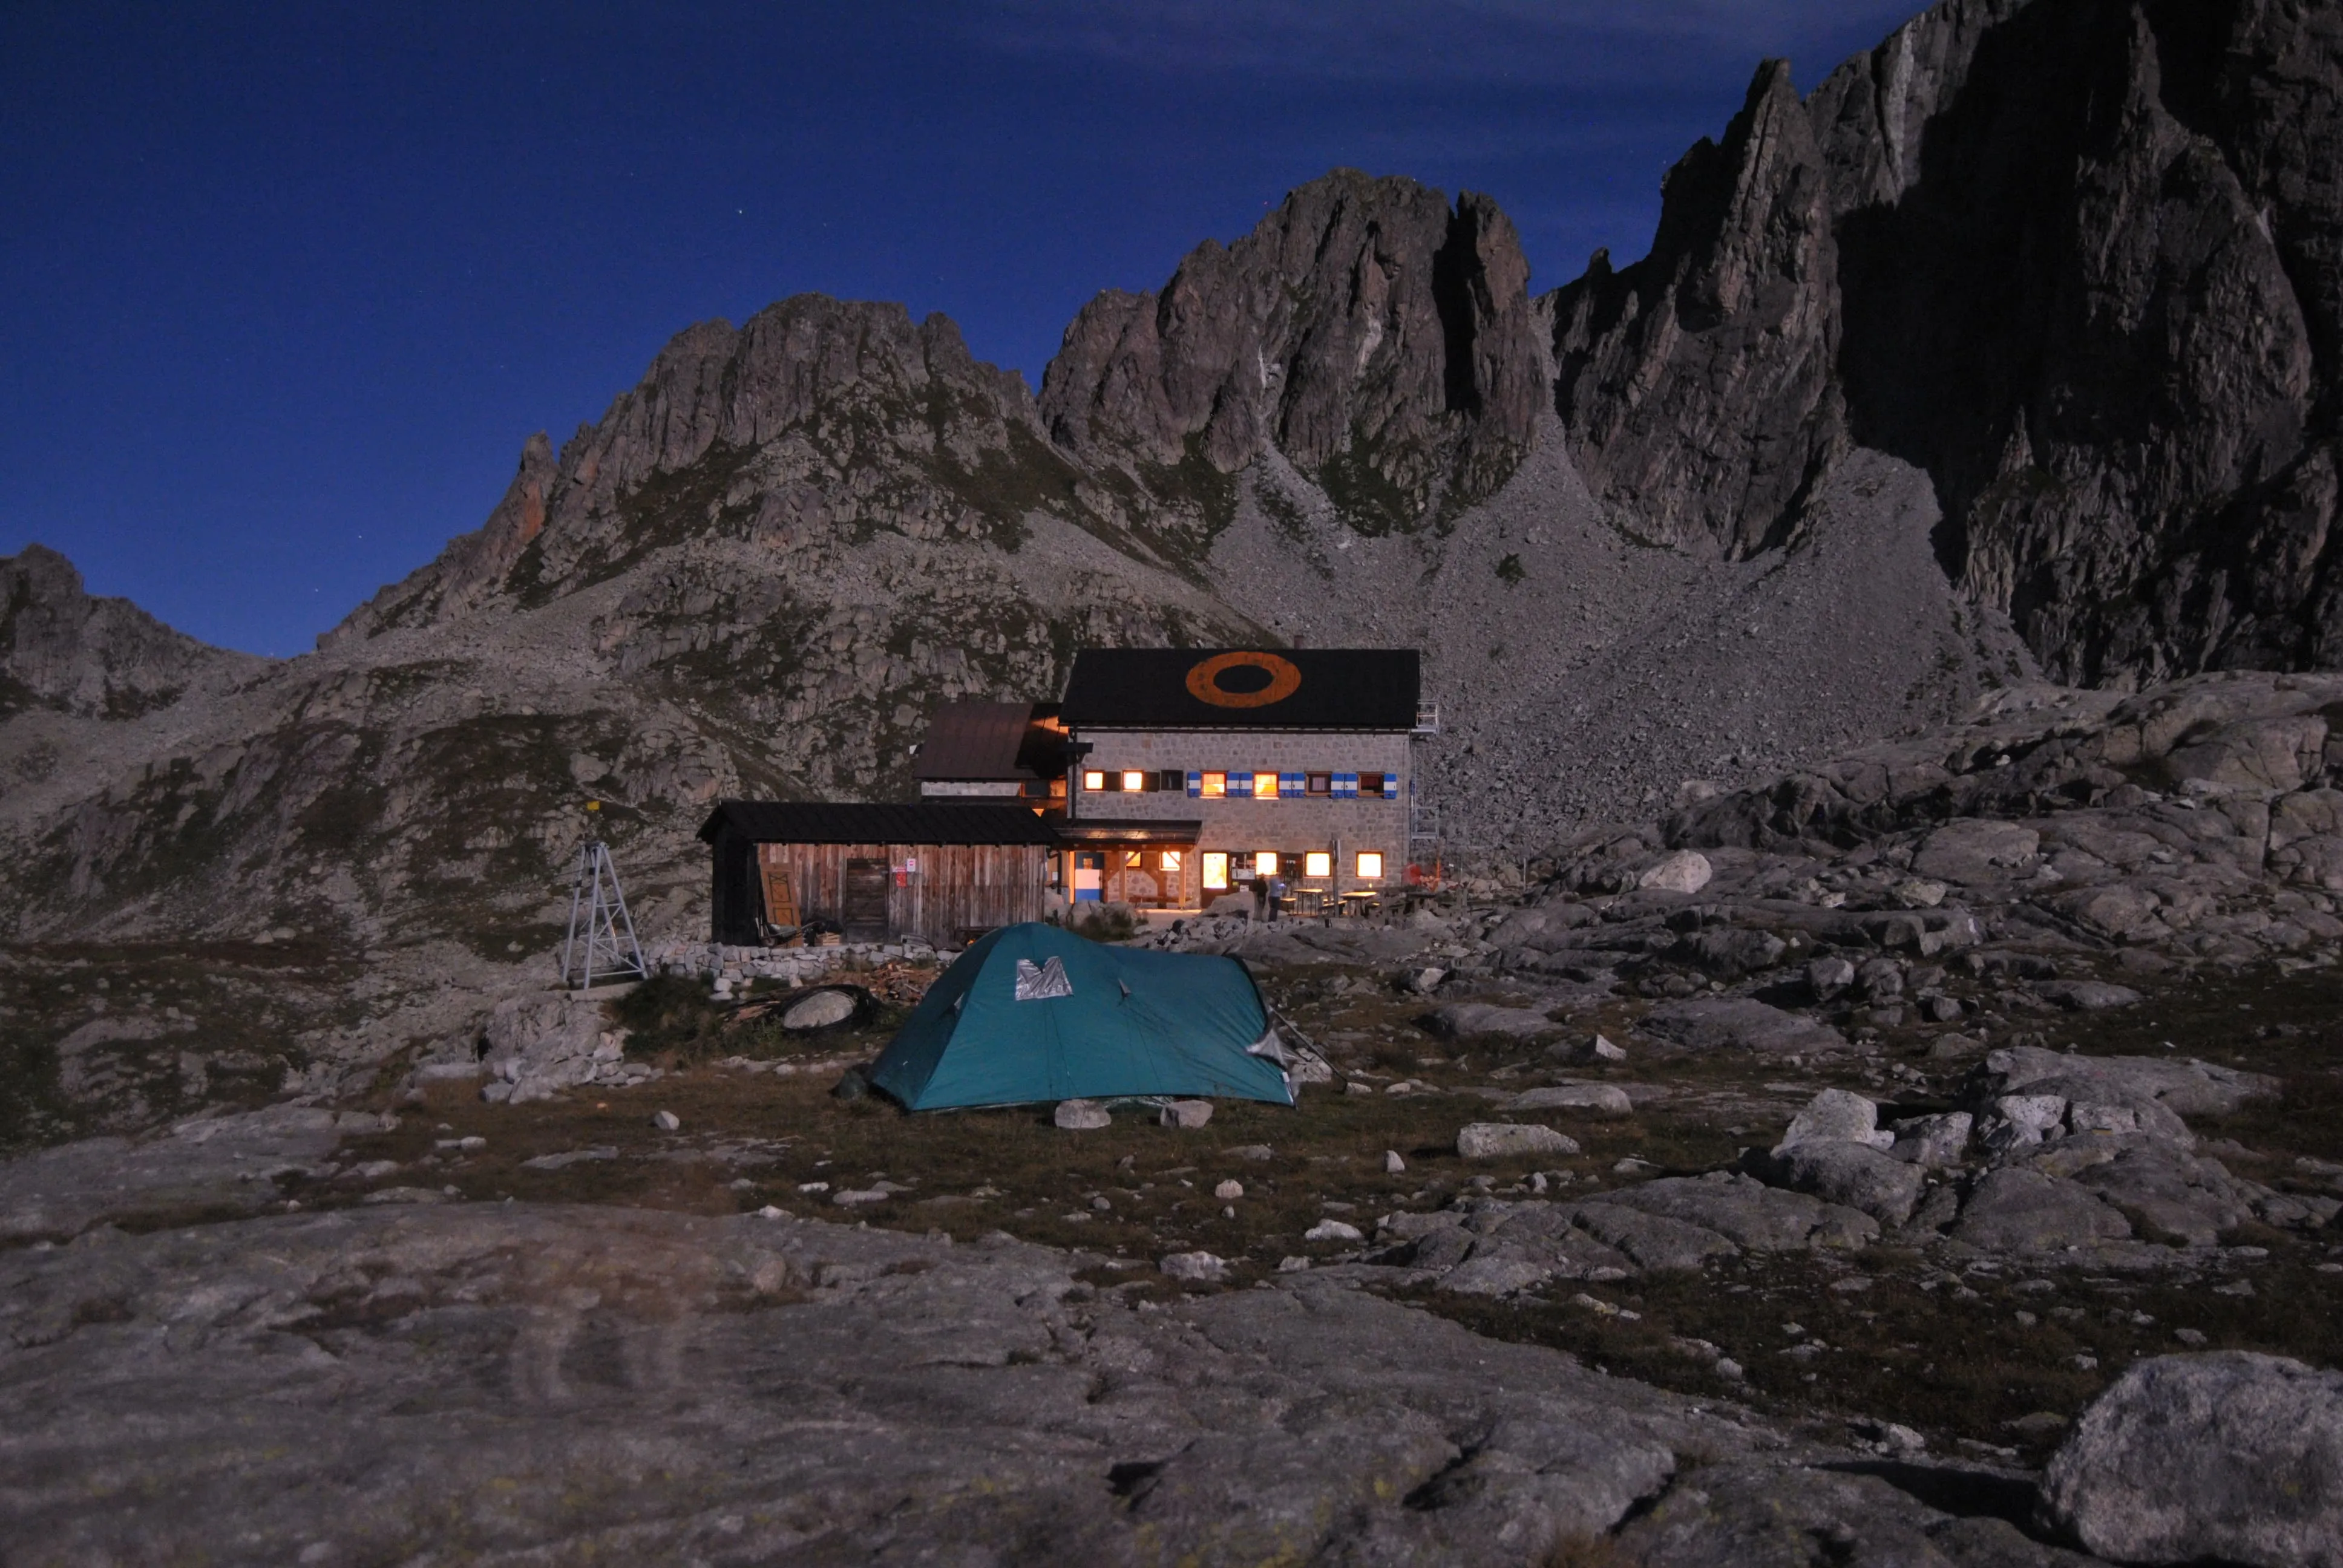 5. The Granite Dolomites: Alta Via del Granito